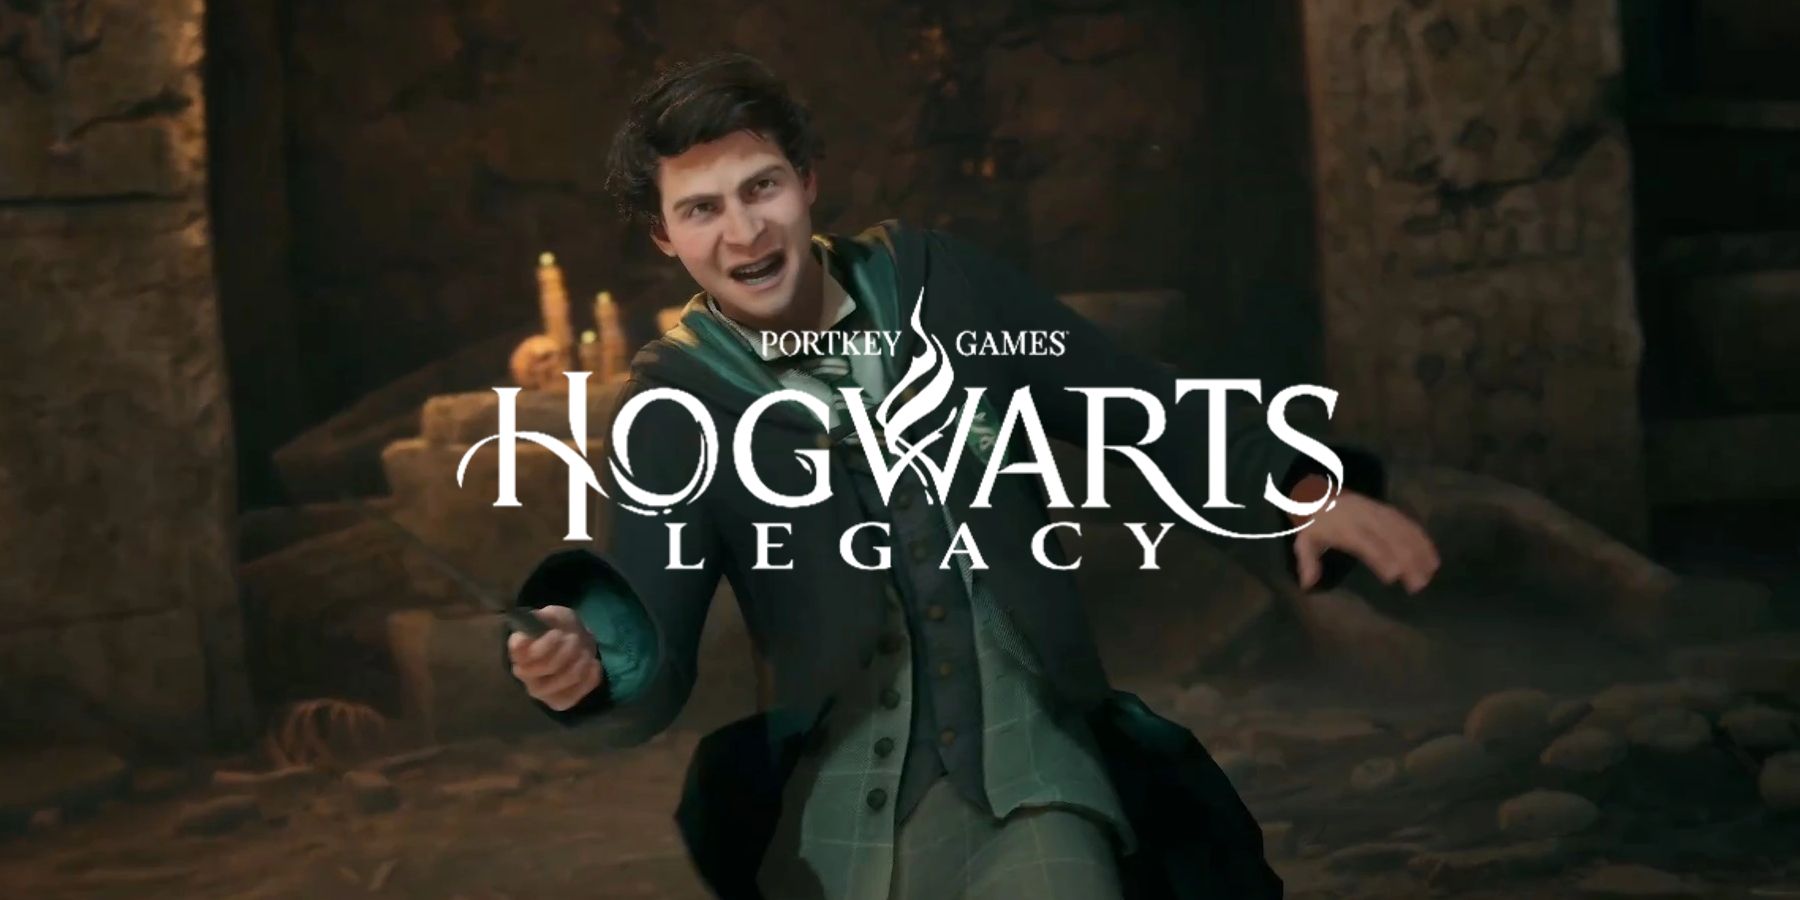 jk rowling on hogwarts legacy